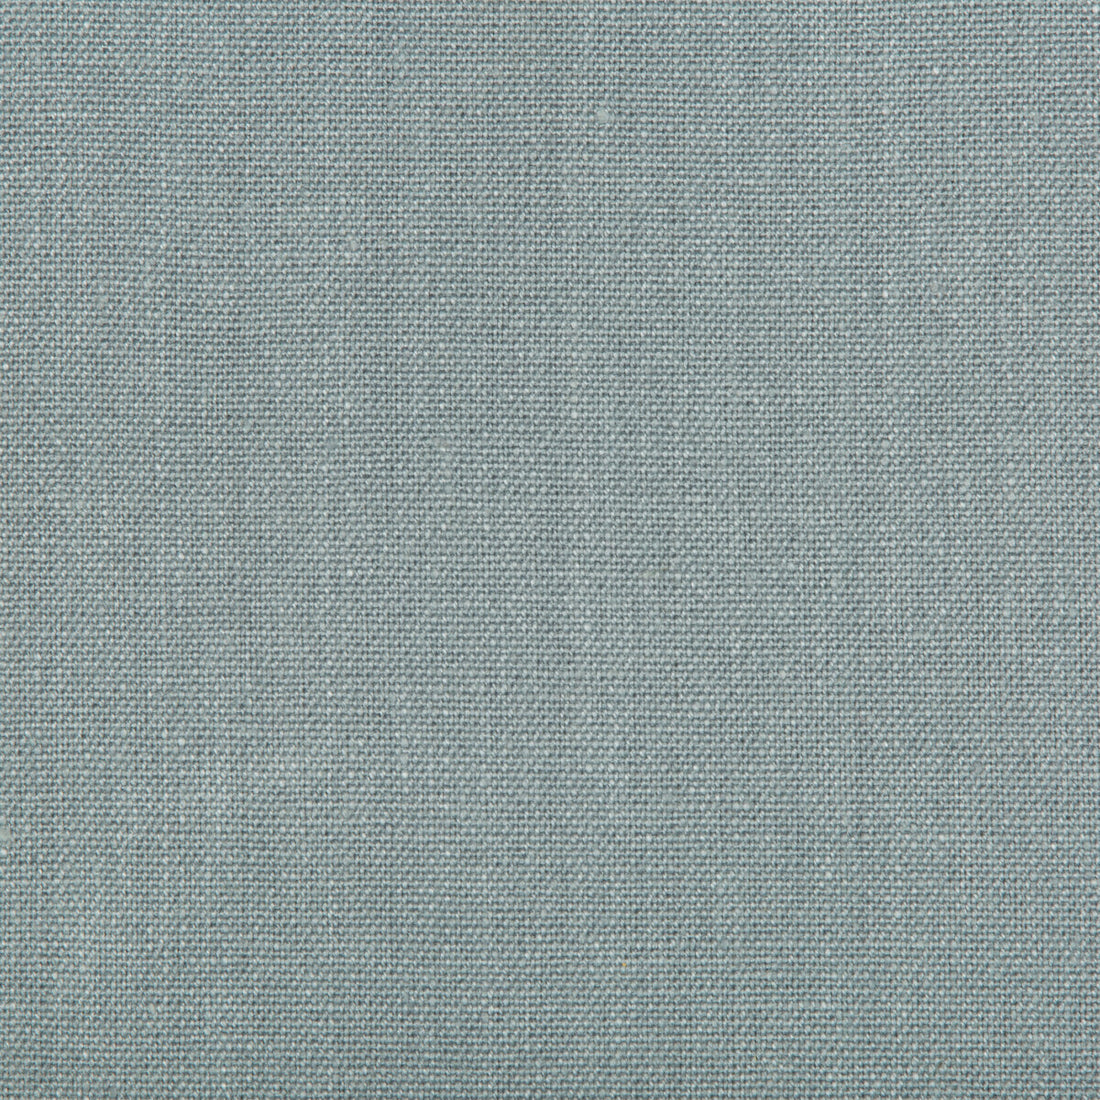 Kravet Basics fabric in 30421-511 color - pattern 30421.511.0 - by Kravet Basics